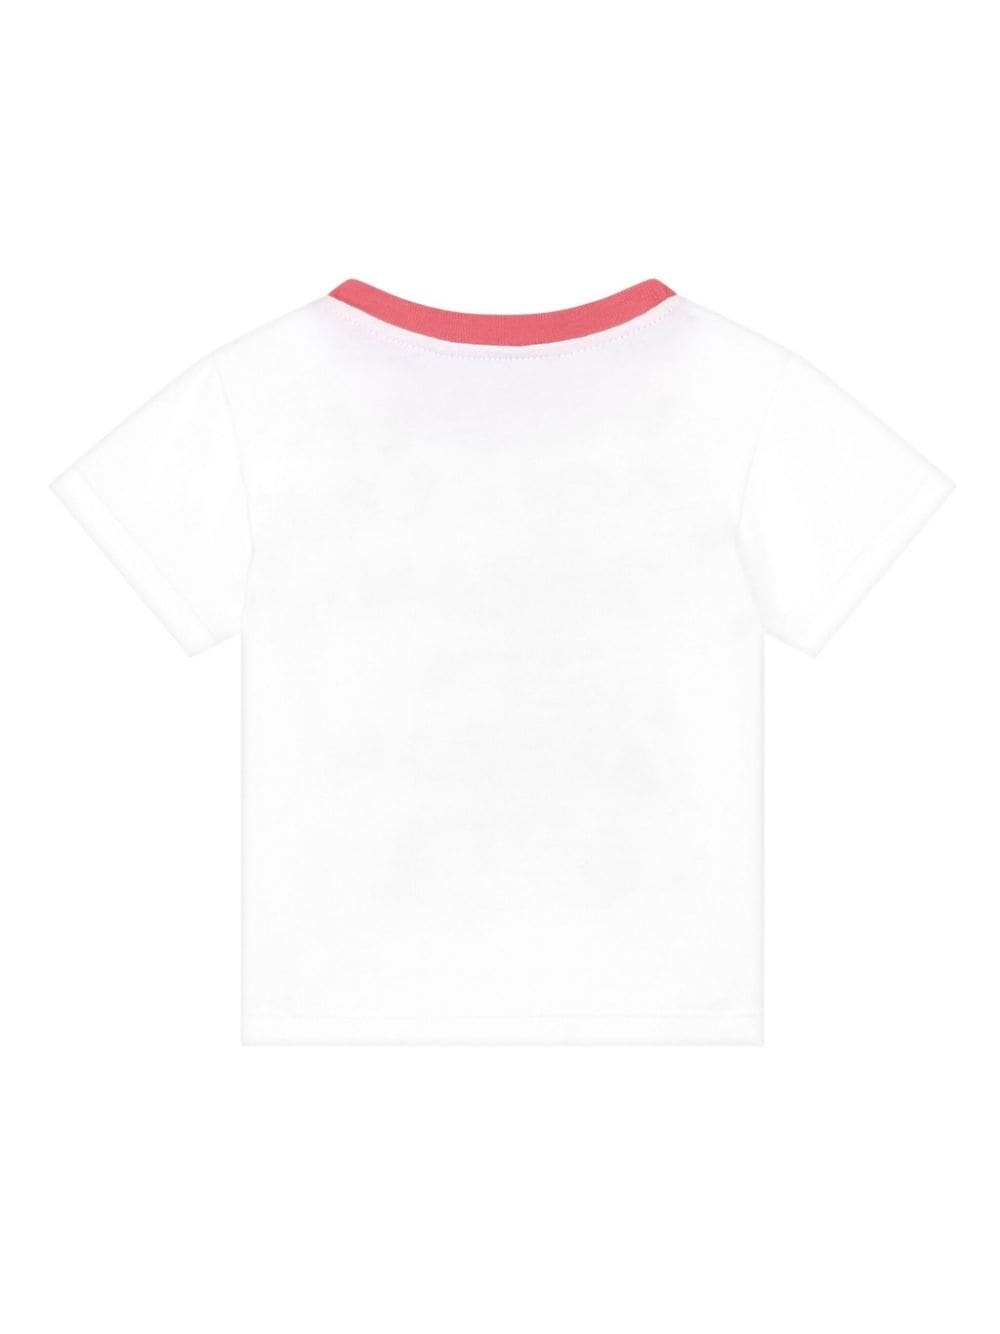 t-shirt bianca neonata